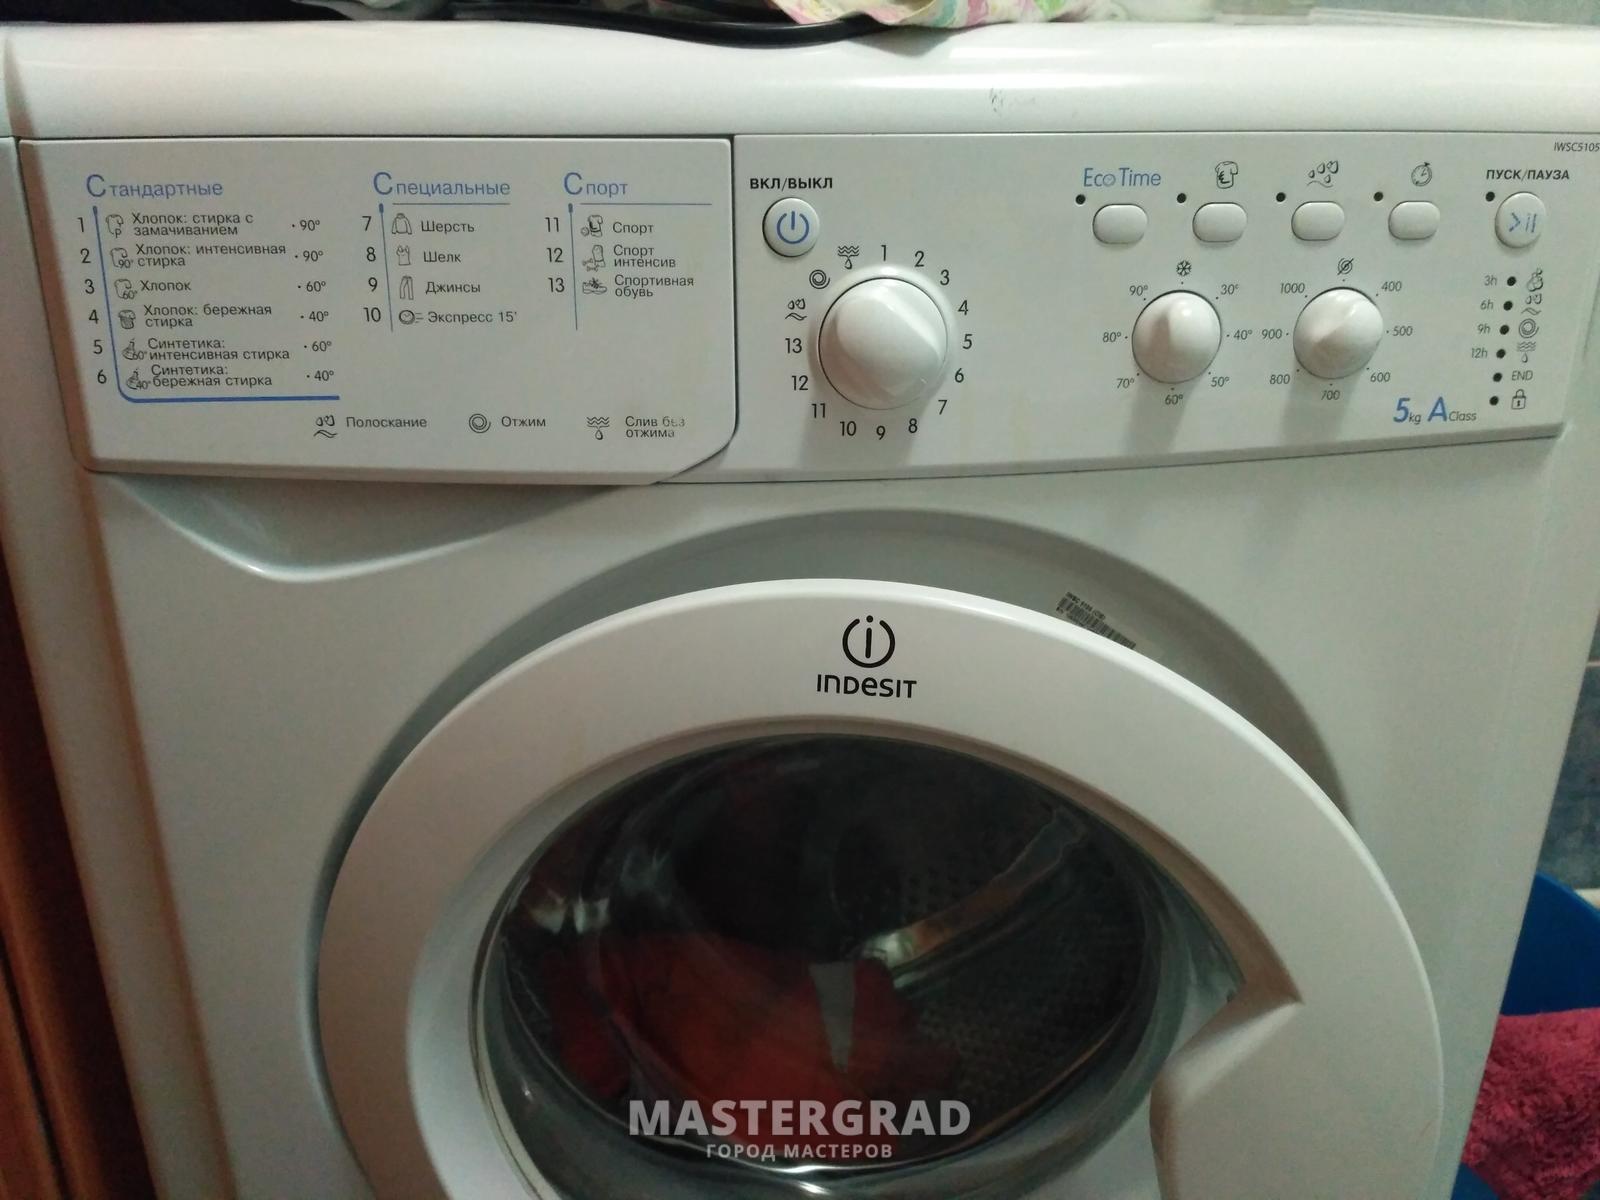 Ремонт стиральных машин своими руками - Сервисный центр